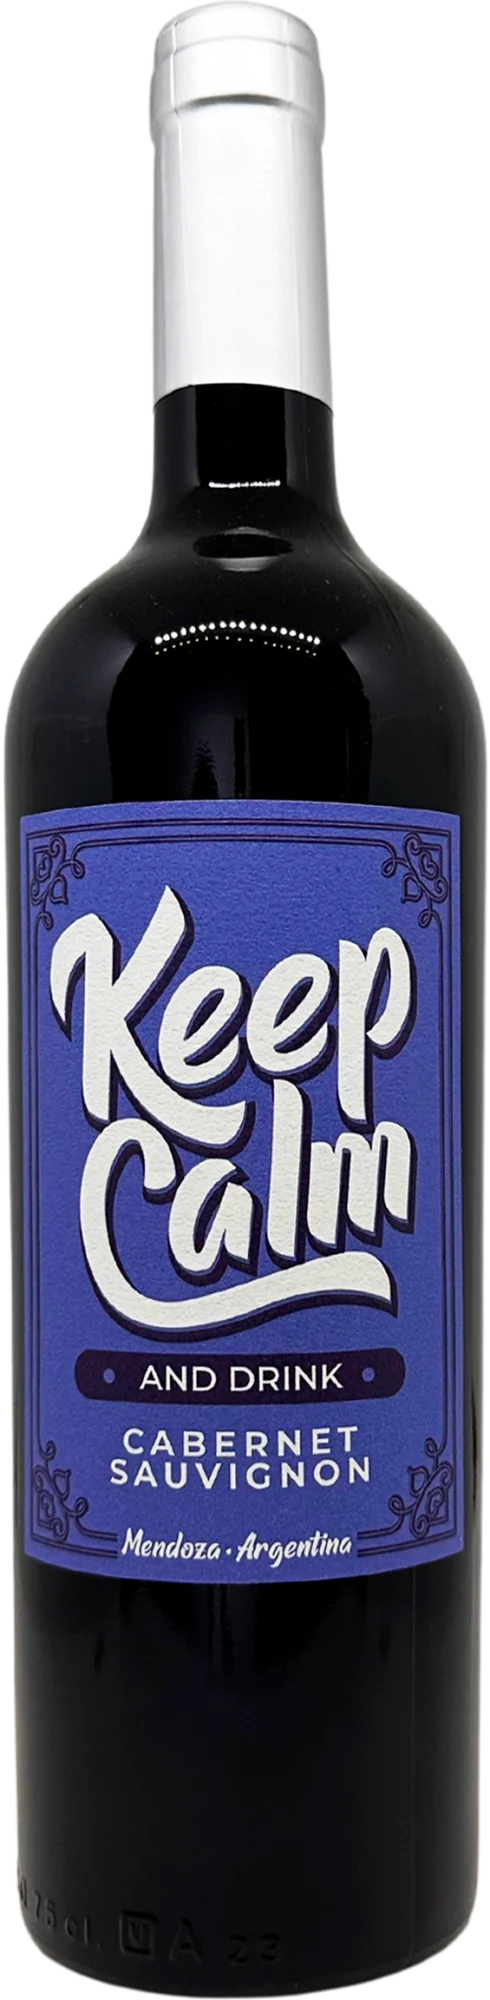 Keep Calm Cabernet Sauvignon